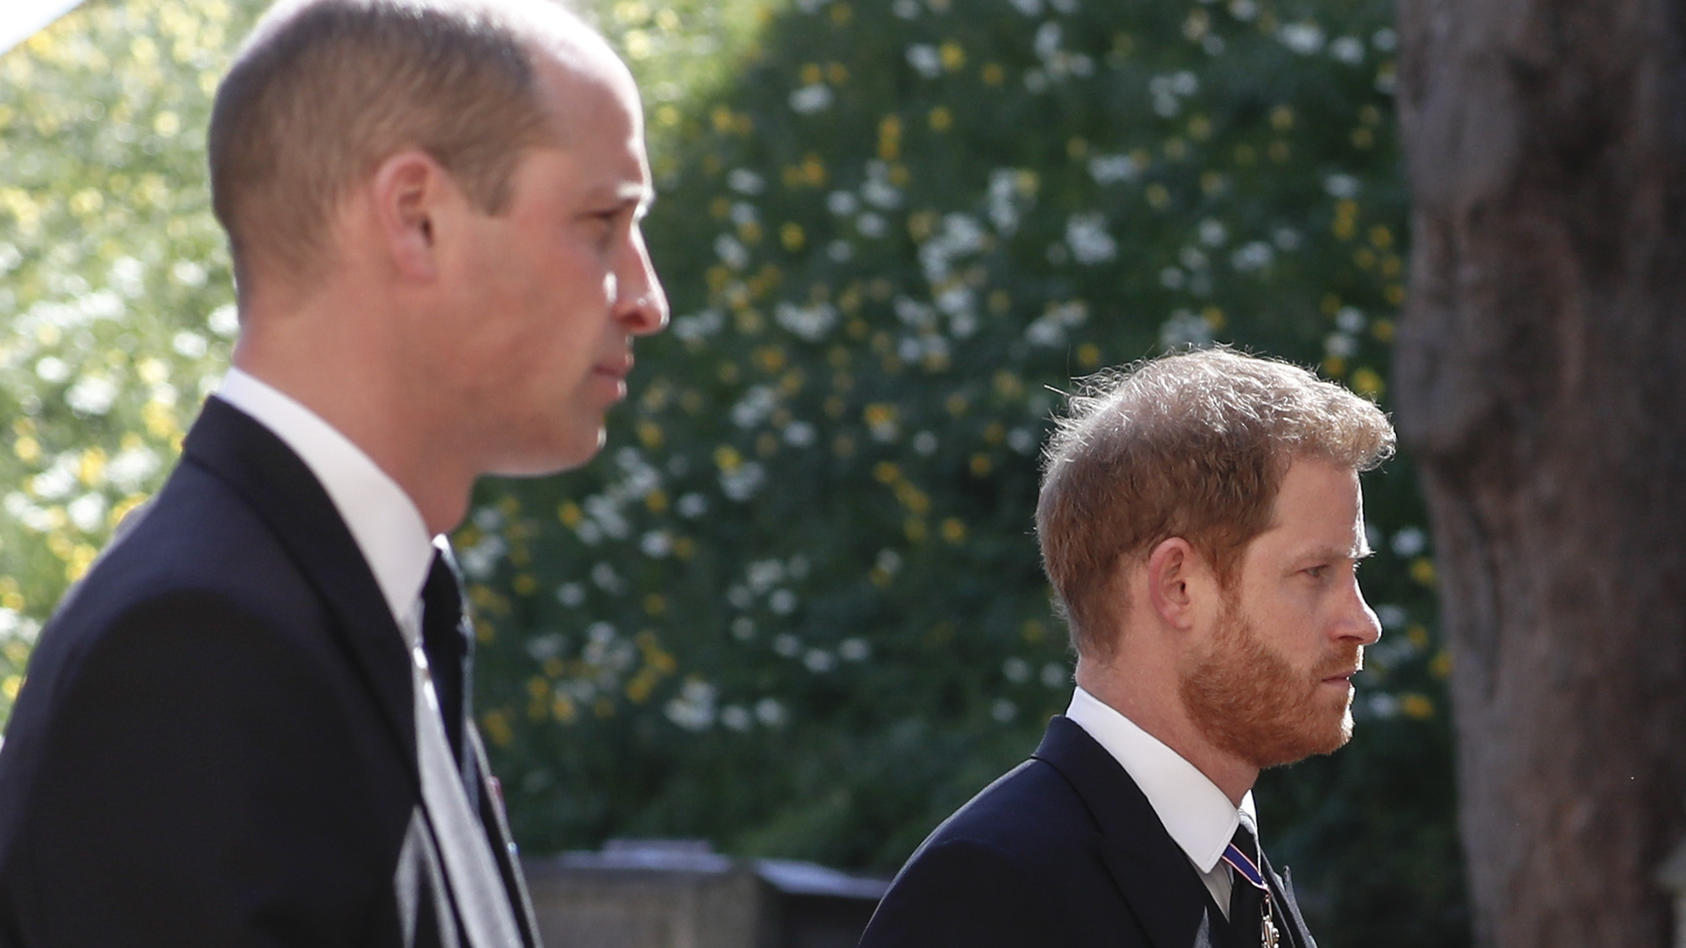 Die Prinzen William und Harry bei der Beerdigung von Großvater und Prinz Philip. Auch bei der Gedenkfeier im Ehren ihrer Mutter Diana werden sie im Juli physisch wieder vereint, sollen jedoch getrennt trauern wollen - jeder mit einer eigenen Gedenkre